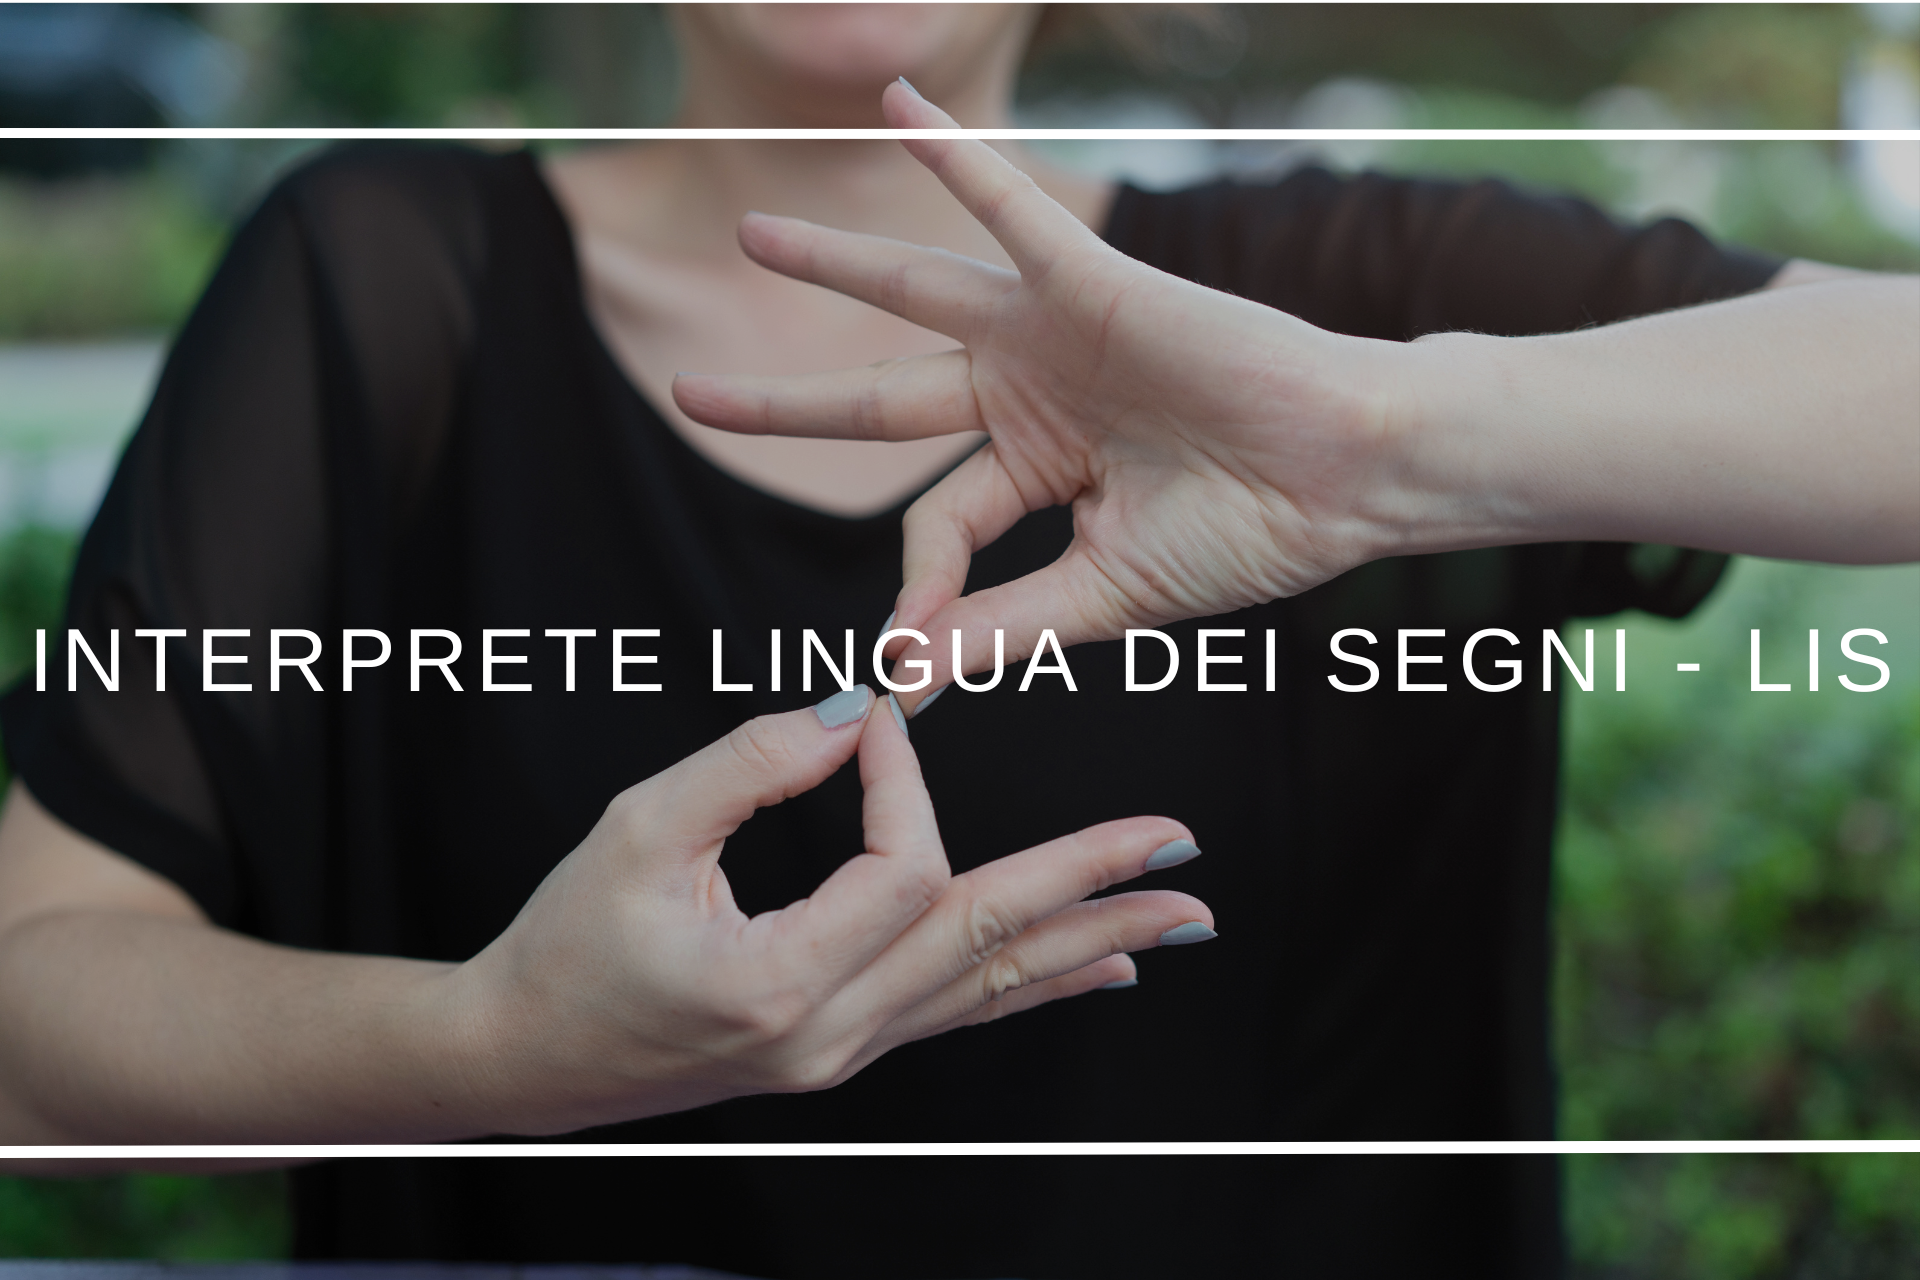 Corso interprete lingua dei segni - LIS